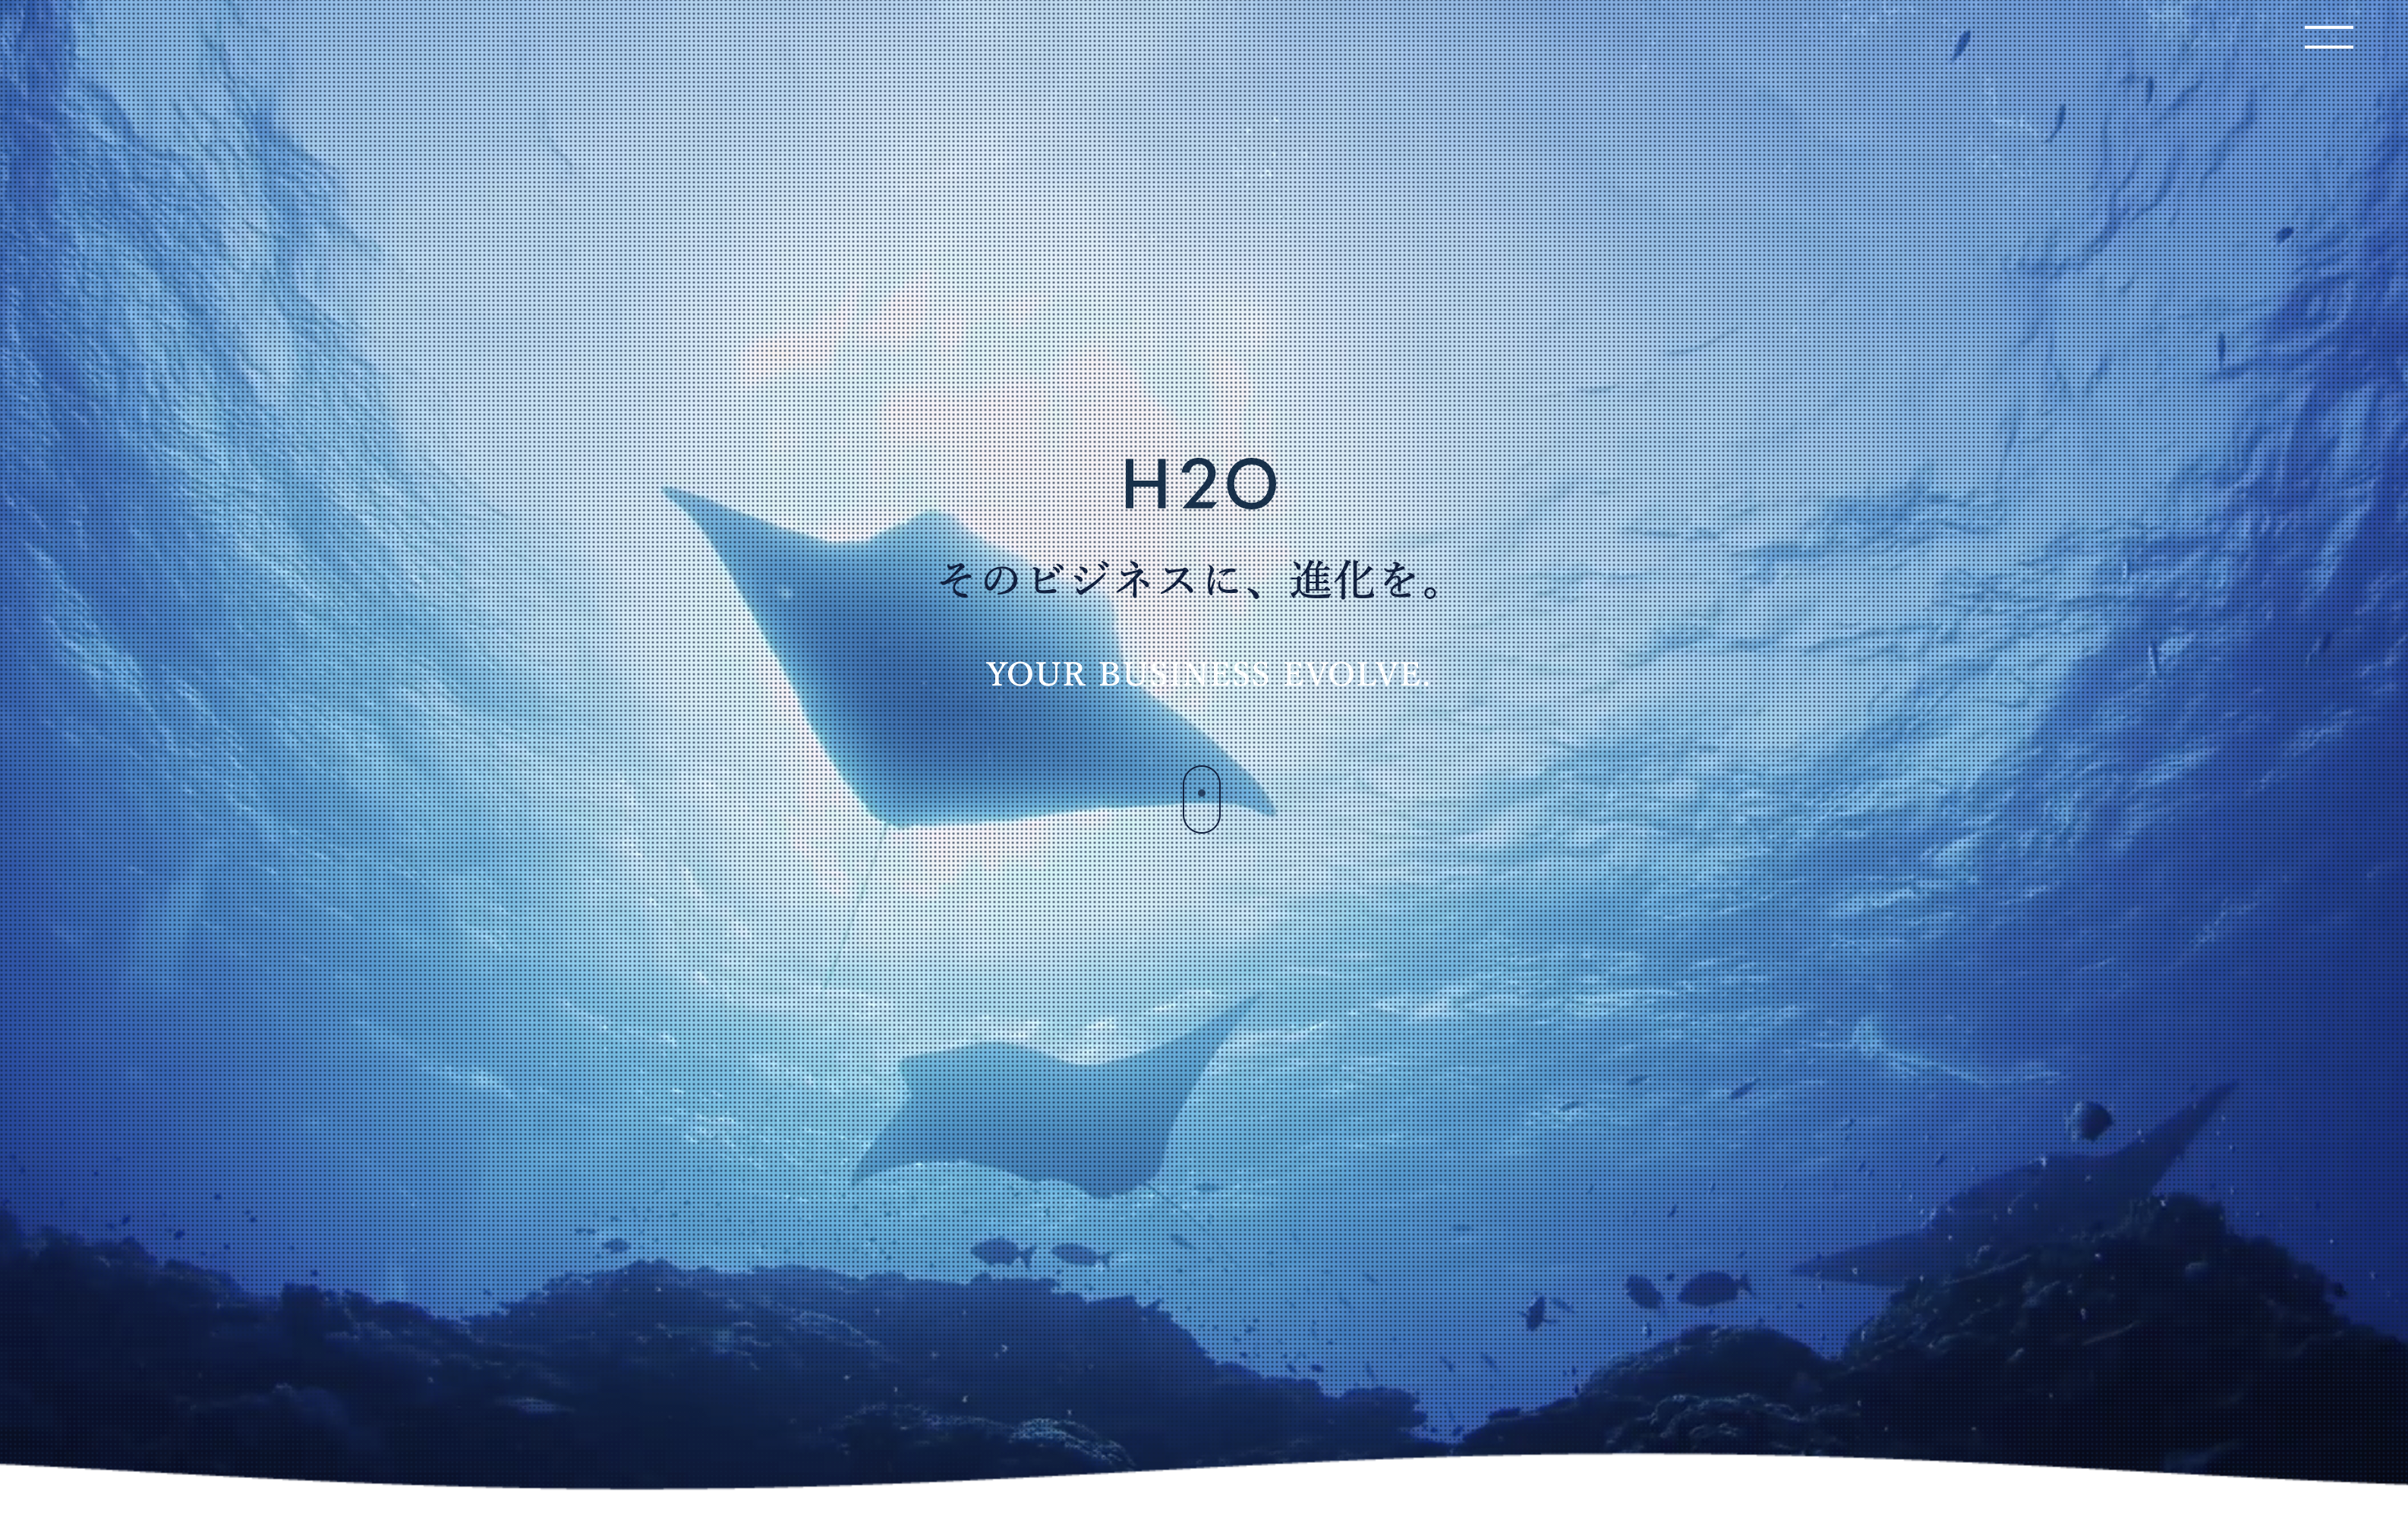 株式会社H2Oの株式会社H2O:商品撮影サービス